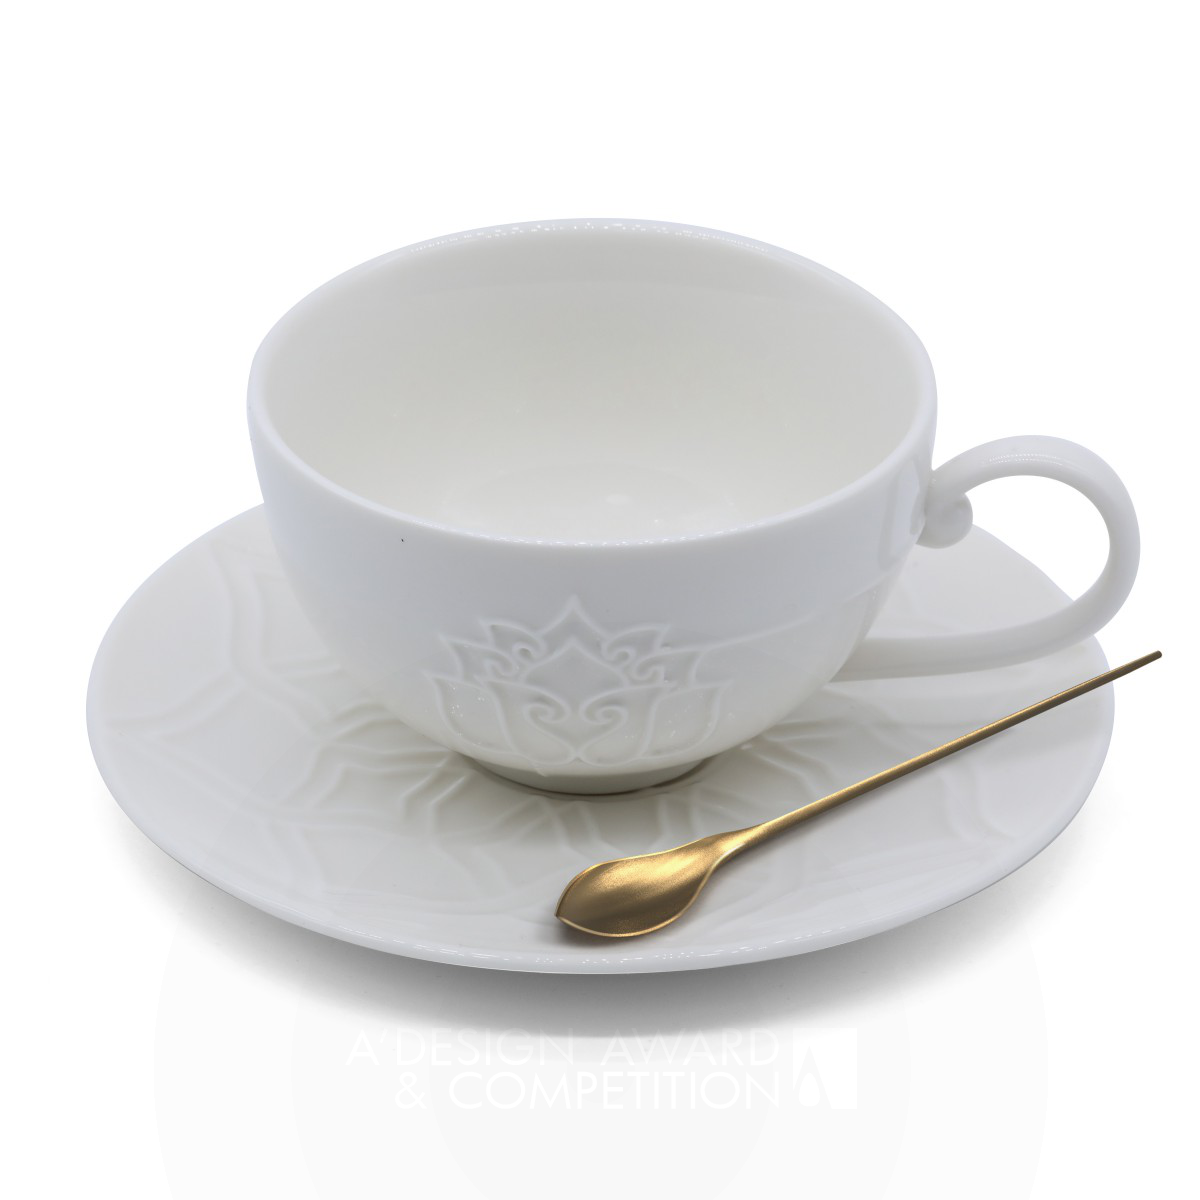 He He Lotus: Слияние минимализма и китайского пуризма в дизайне кофейной чашки